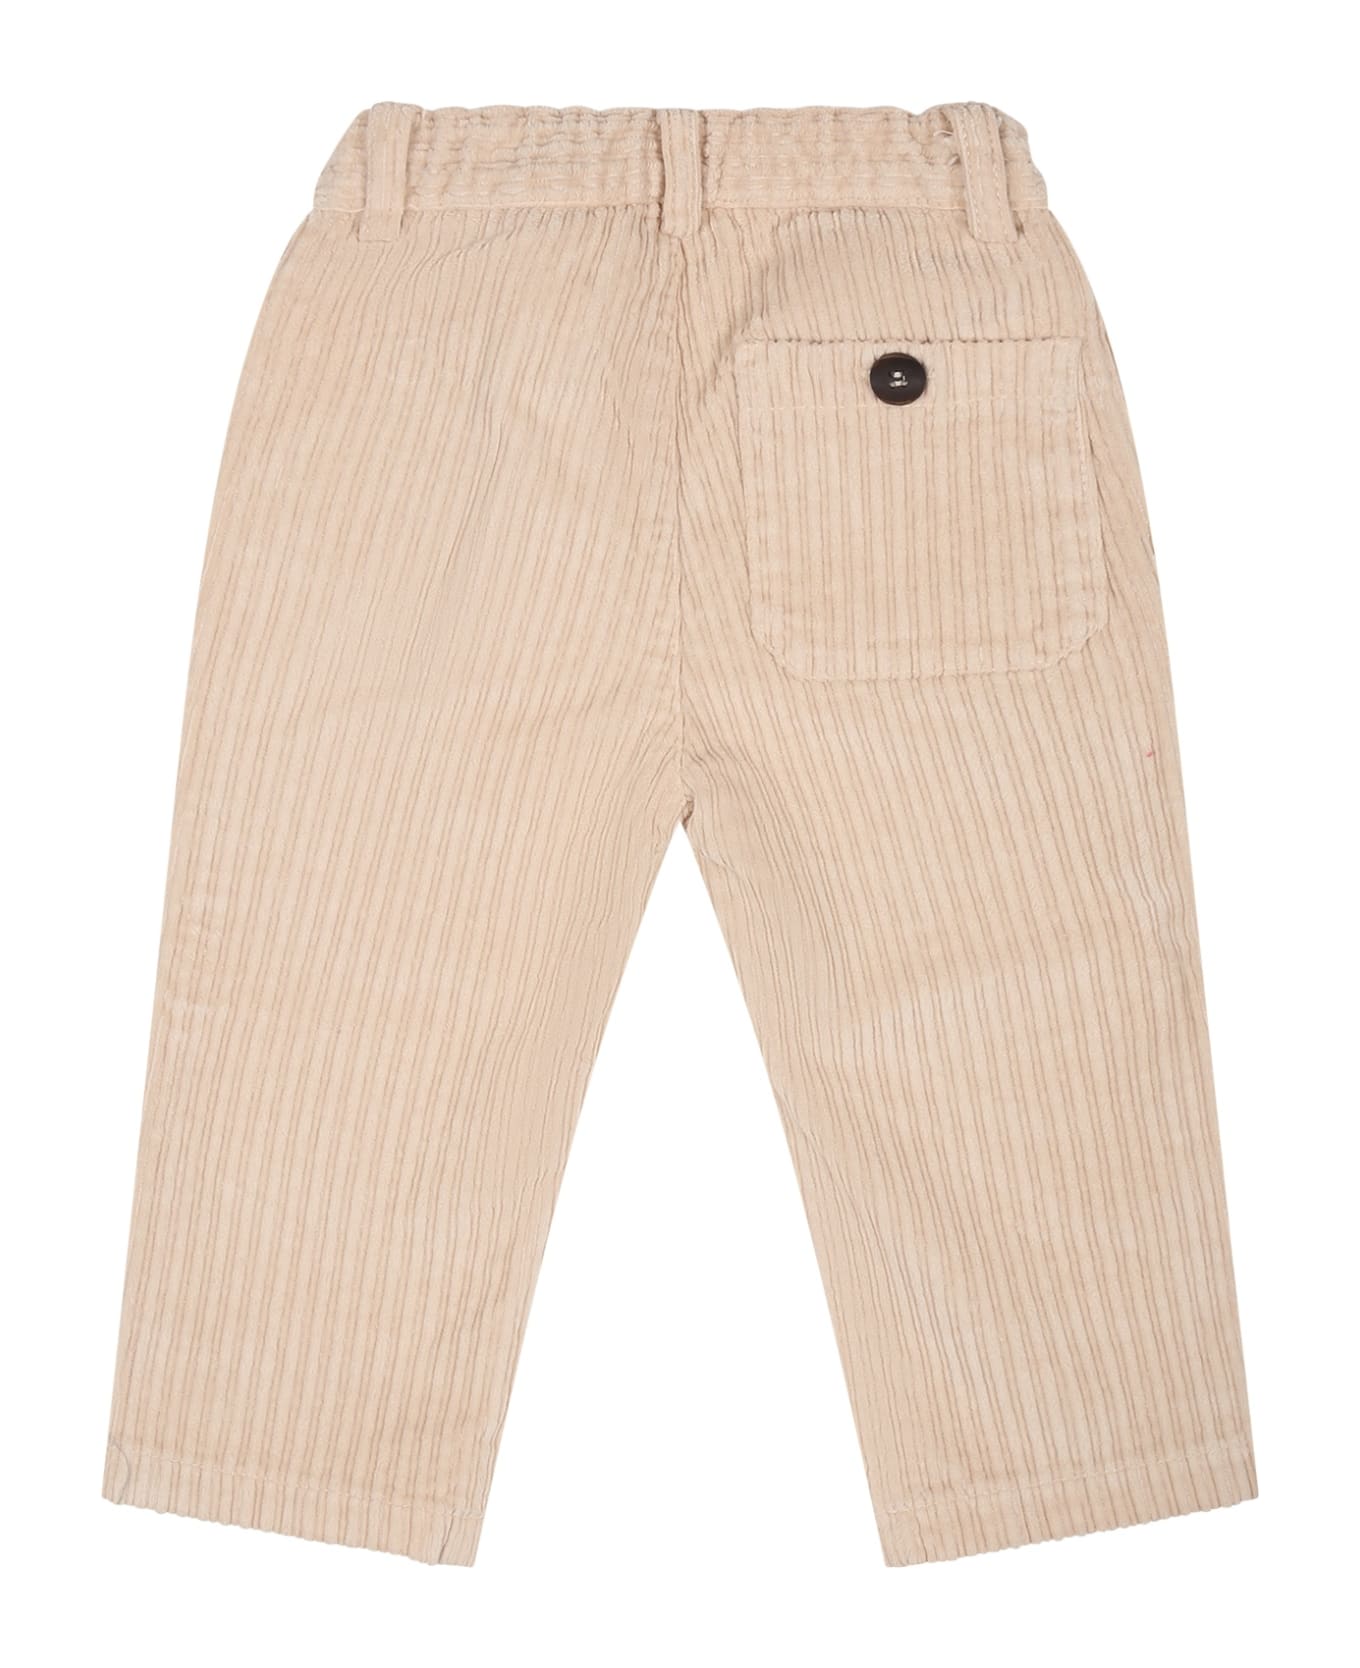 Zhoe & Tobiah Beige Trousers For Baby Boy - Beige